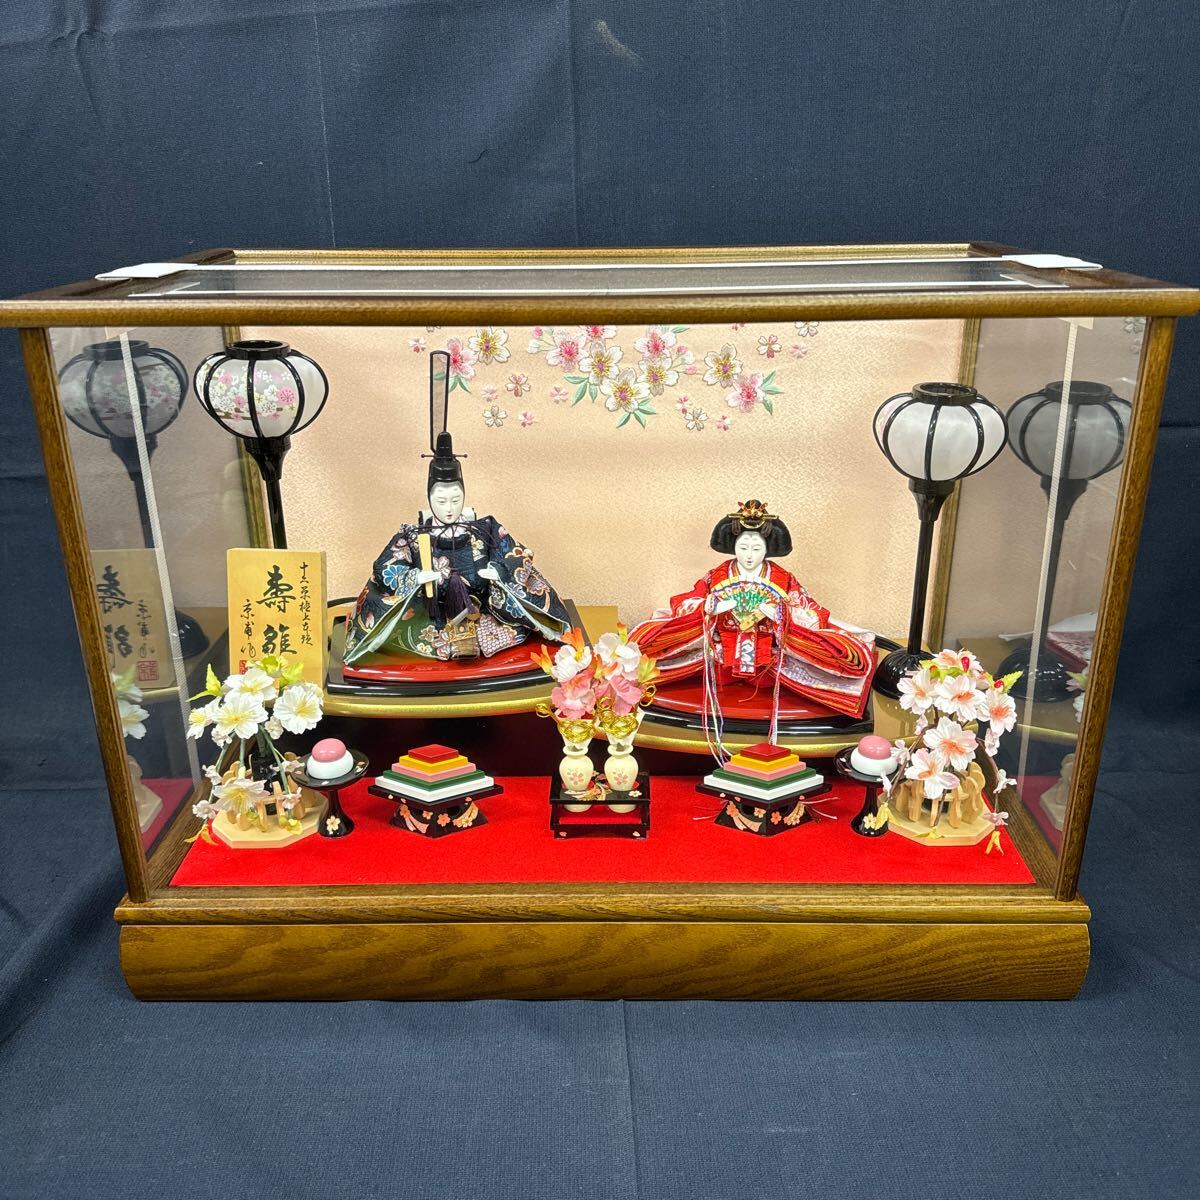 ◆Ausstellung von Hina-Puppen in einer Vitrine, 2 Senf, Kotobuki-Puppen, Hergestellt von Kyofu, hölzern, Rosa, Kimono-Blumenmuster, Schneehöhlenbeleuchtung, Puppenfest, Hina-Puppen, Pfirsichfest, Innenraum 158-38, Jahreszeit, Jährliche Veranstaltung, Puppenfest, Hina-Puppe